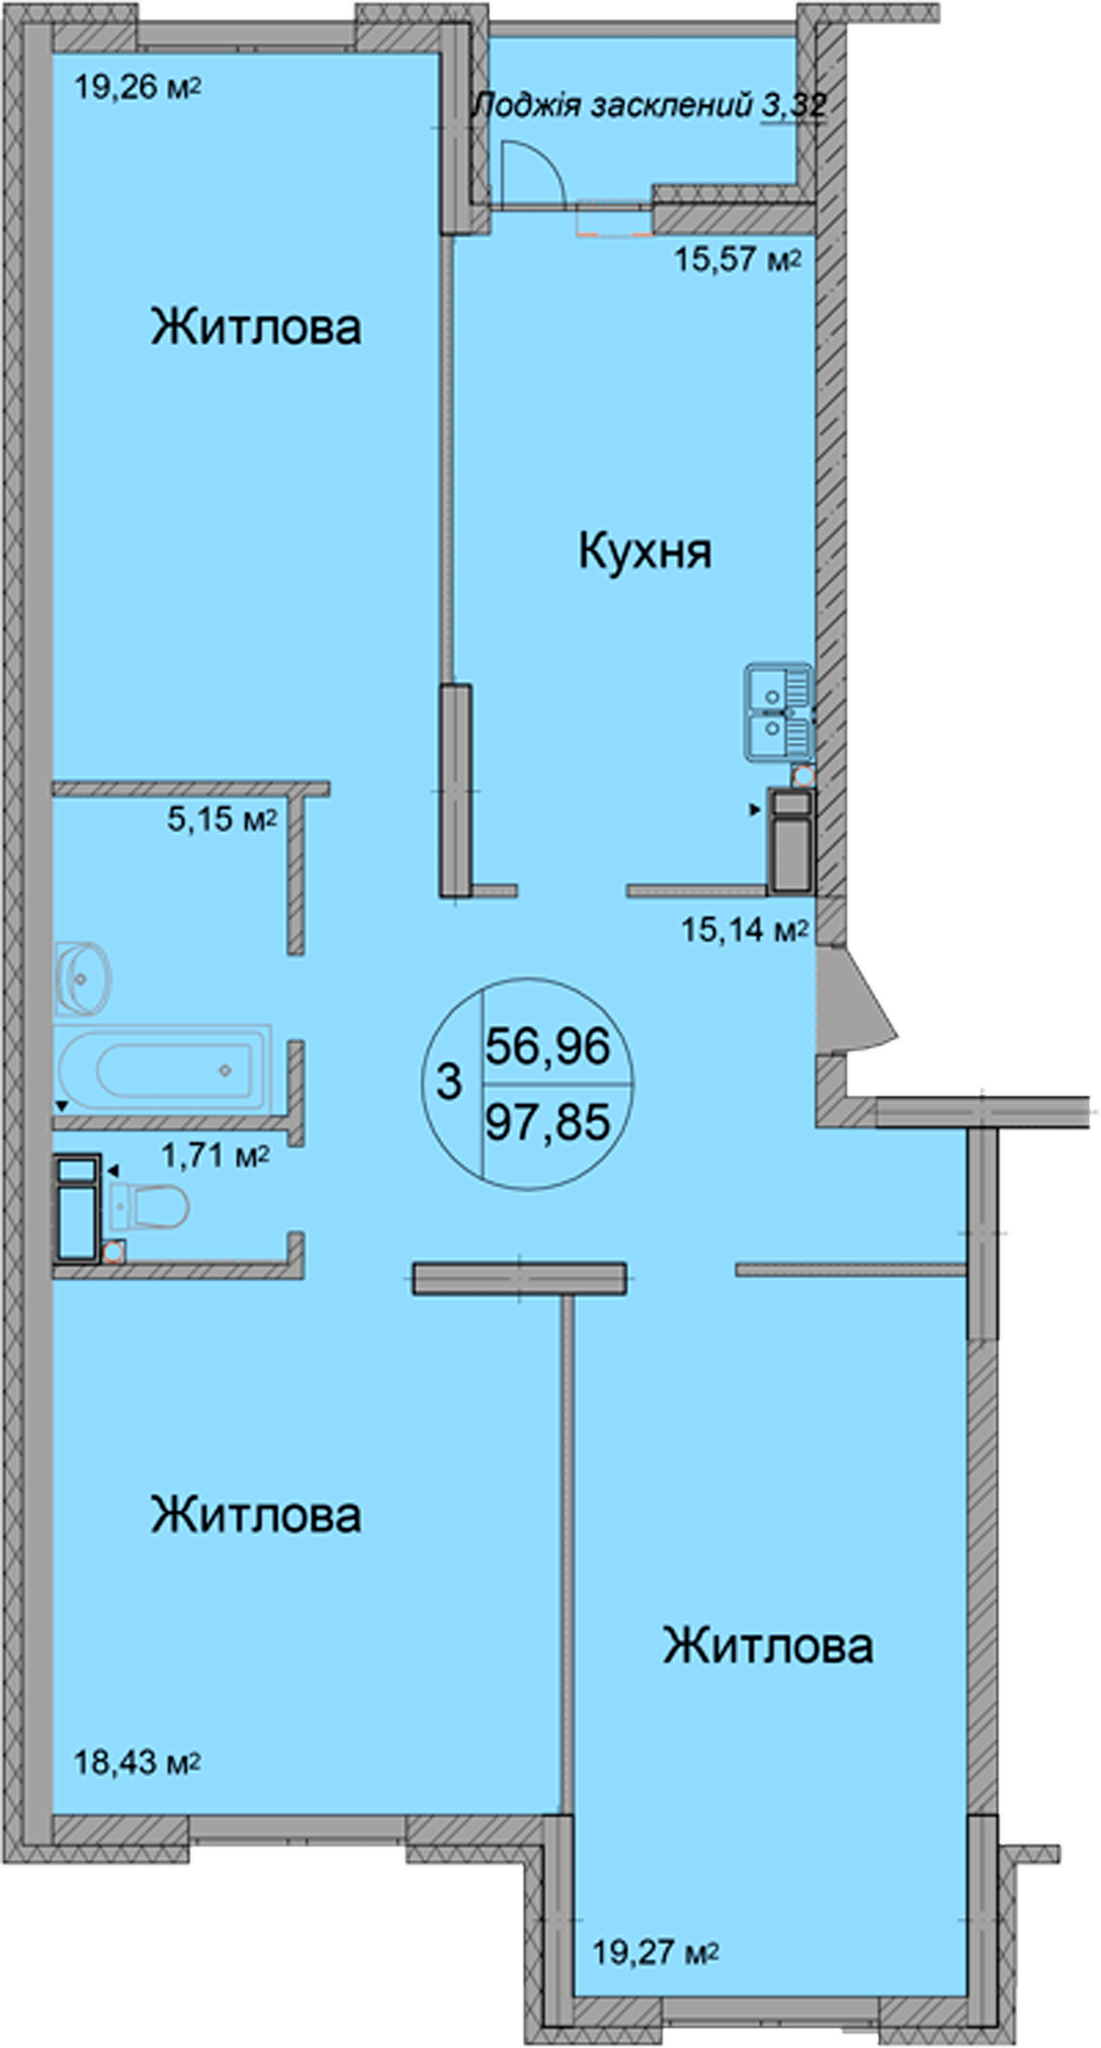 3-кімнатна 97.85 м² в ЖК Святобор від 33 500 грн/м², Київ